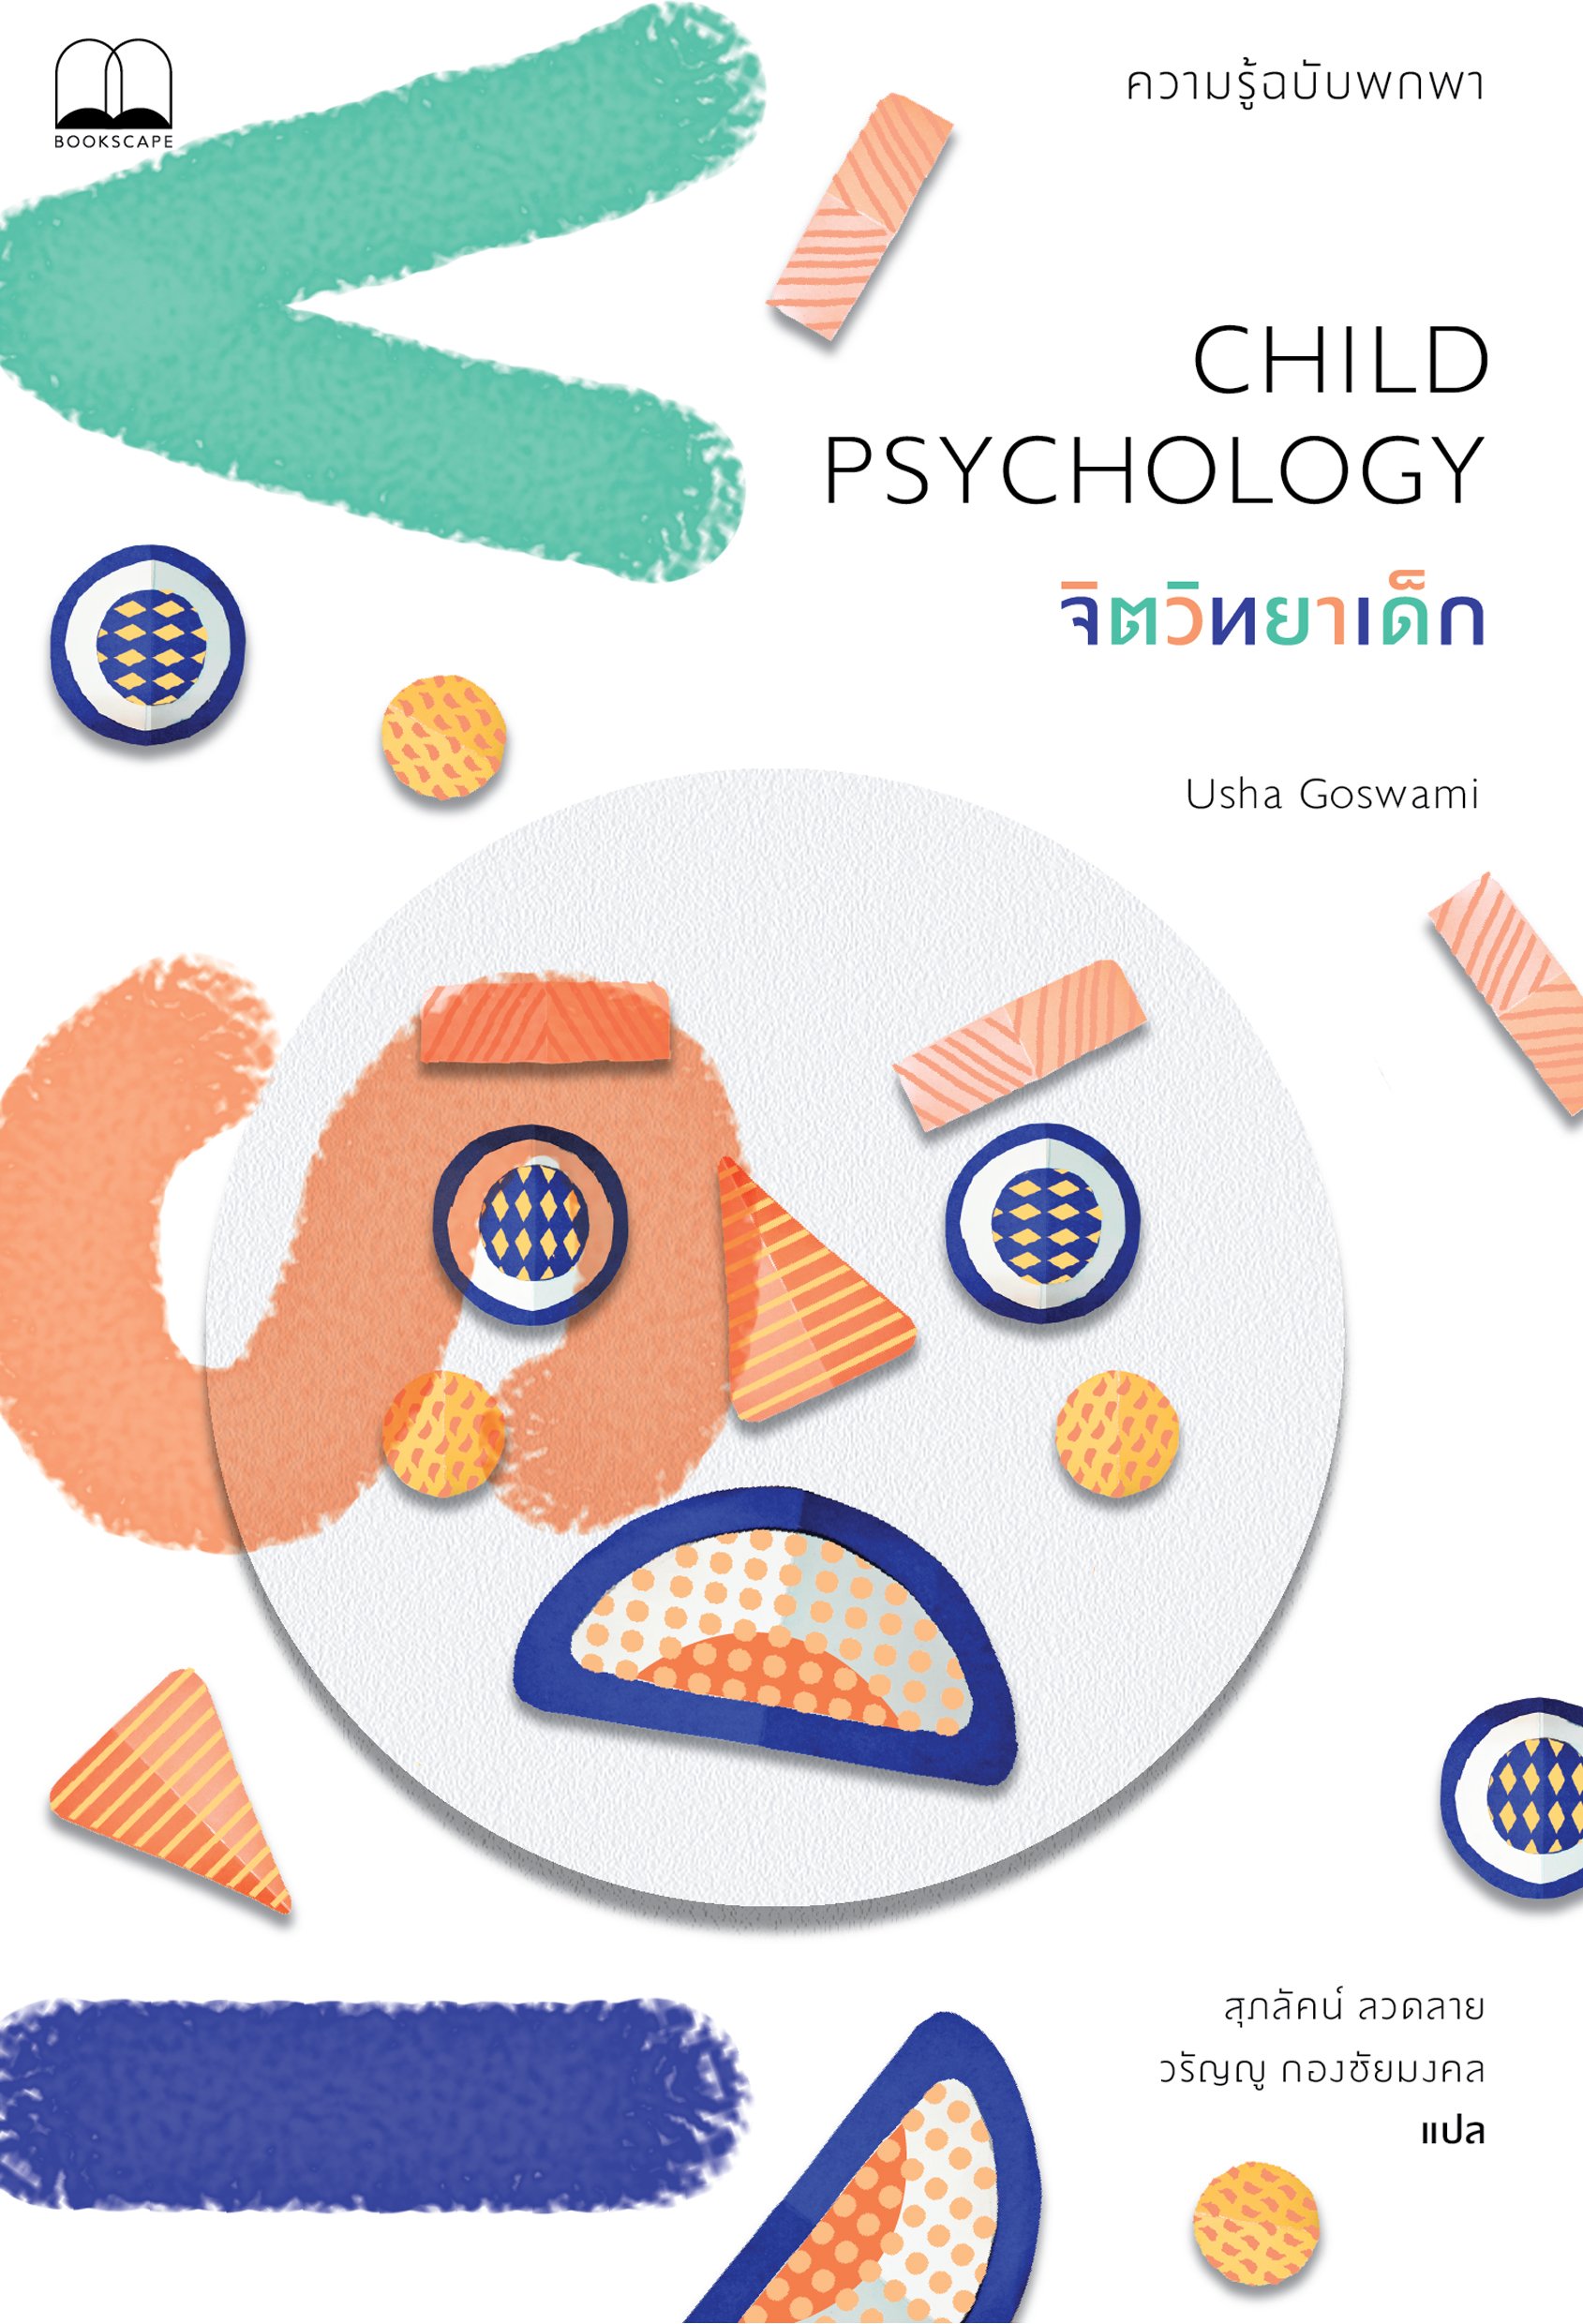 จิตวิทยาเด็ก Child Psychology / Usha Goswami / สุภลัคน์ ลวดลาย, วรัญญู กองชัยมงคล (แปล)